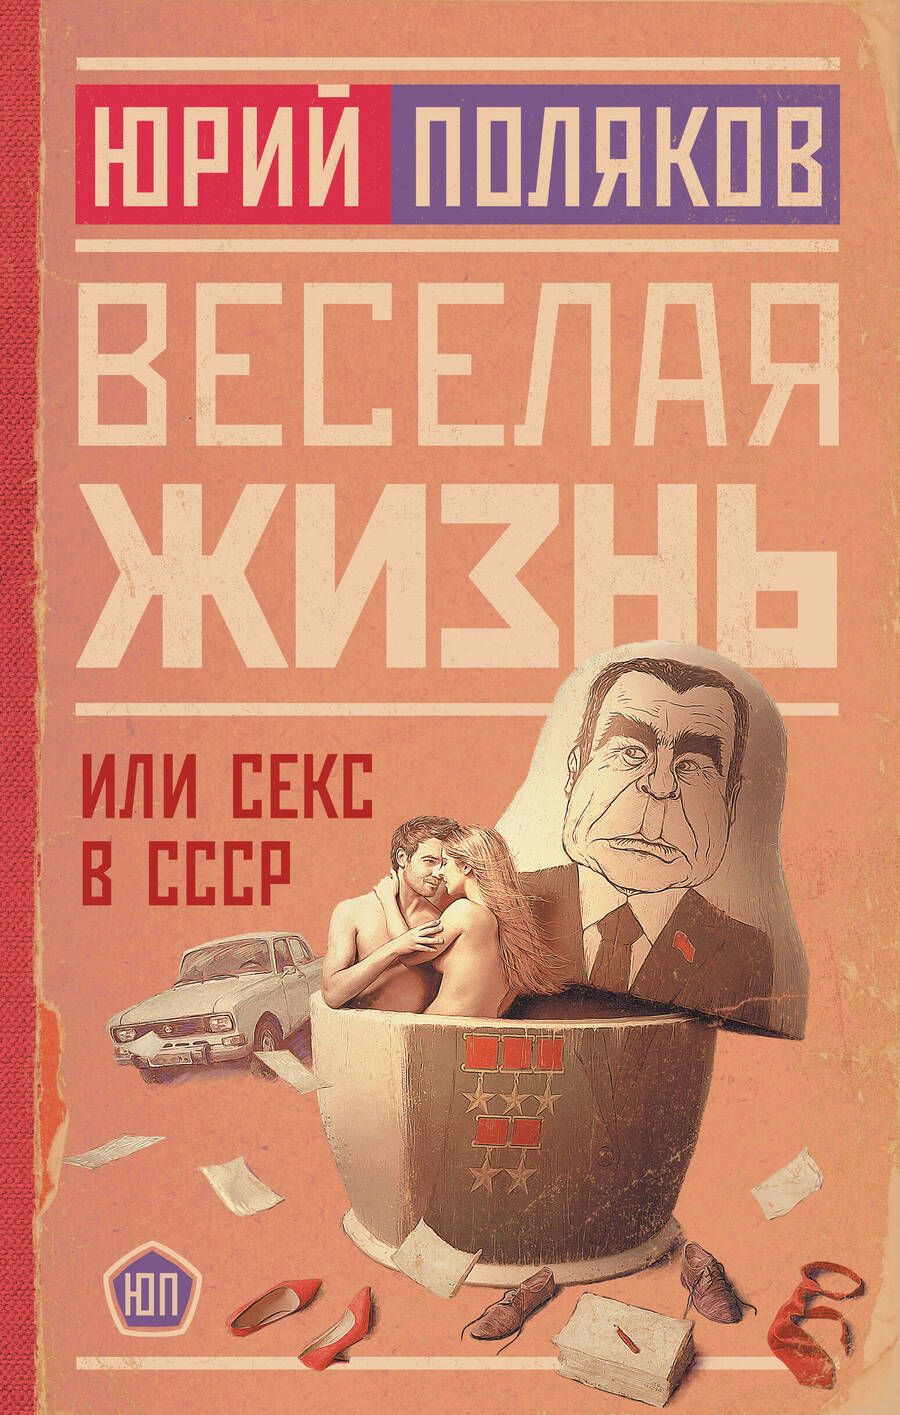 Обложка книги "Юрий Поляков: Веселая жизнь, или Секс в СССР"